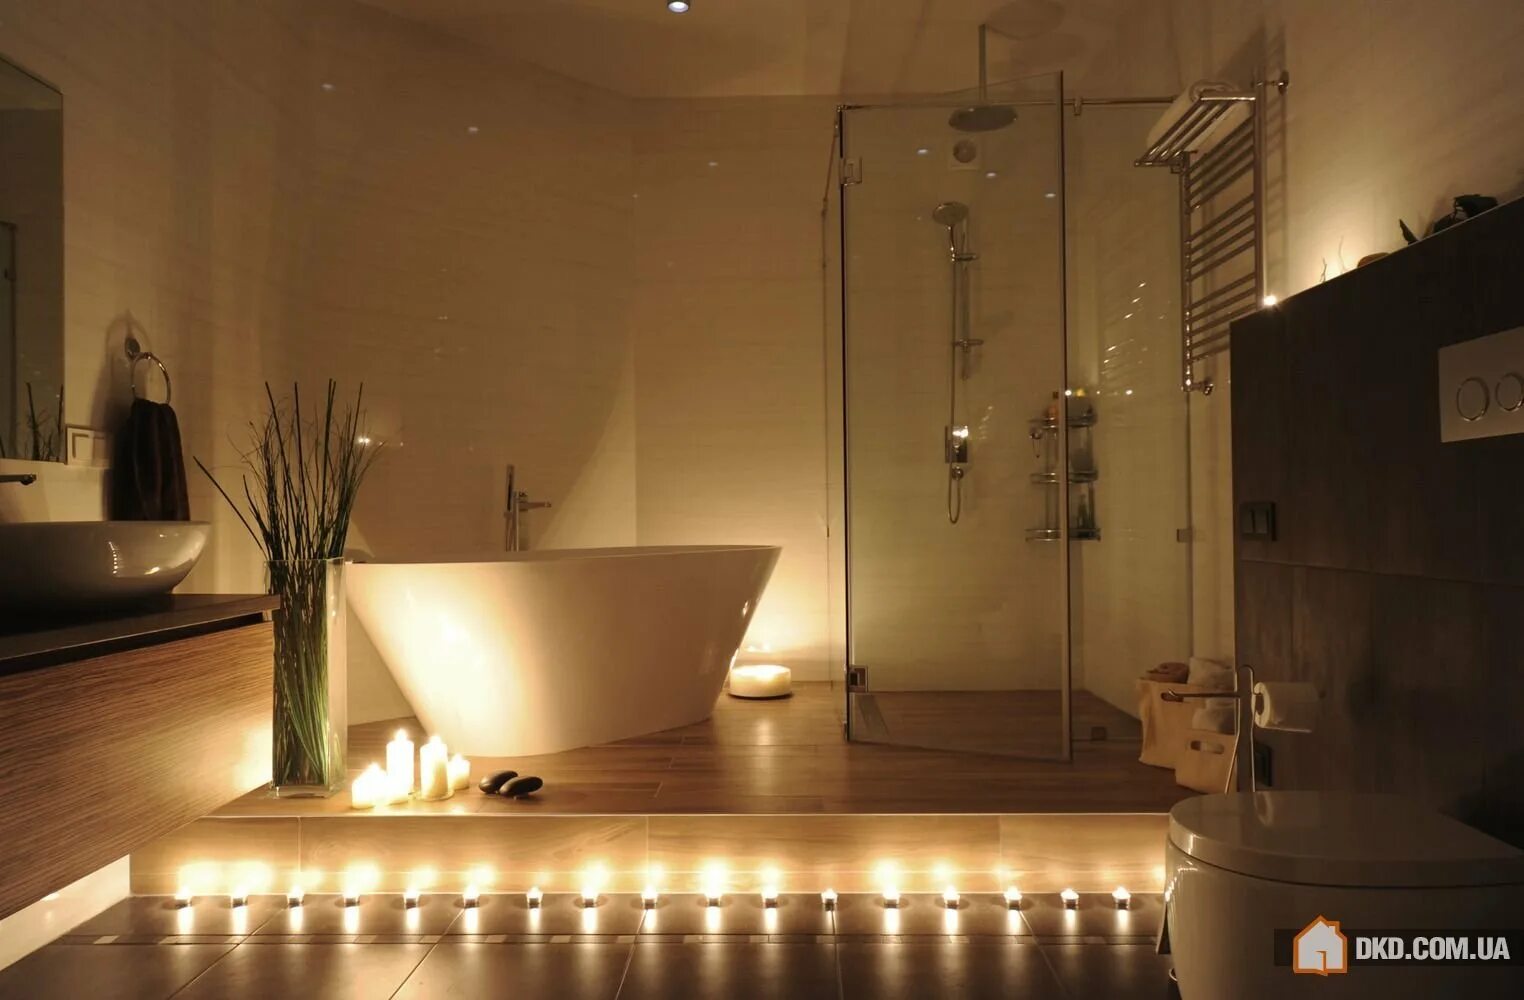 Включи свет в ванне. Ванная комната с подсветкой. Освещение в ванной комнате. Ванна с подсветкой снизу. Необычная подсветка в ванной комнате.